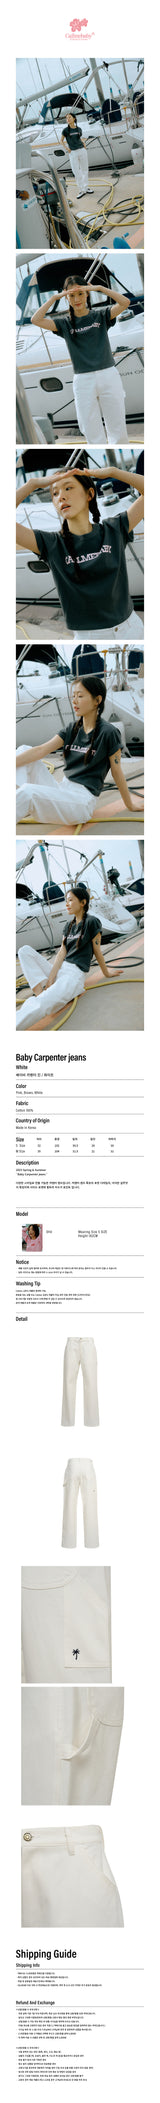 ベイビーカーペンタージーンズ / Baby Carpenter jeans _ White